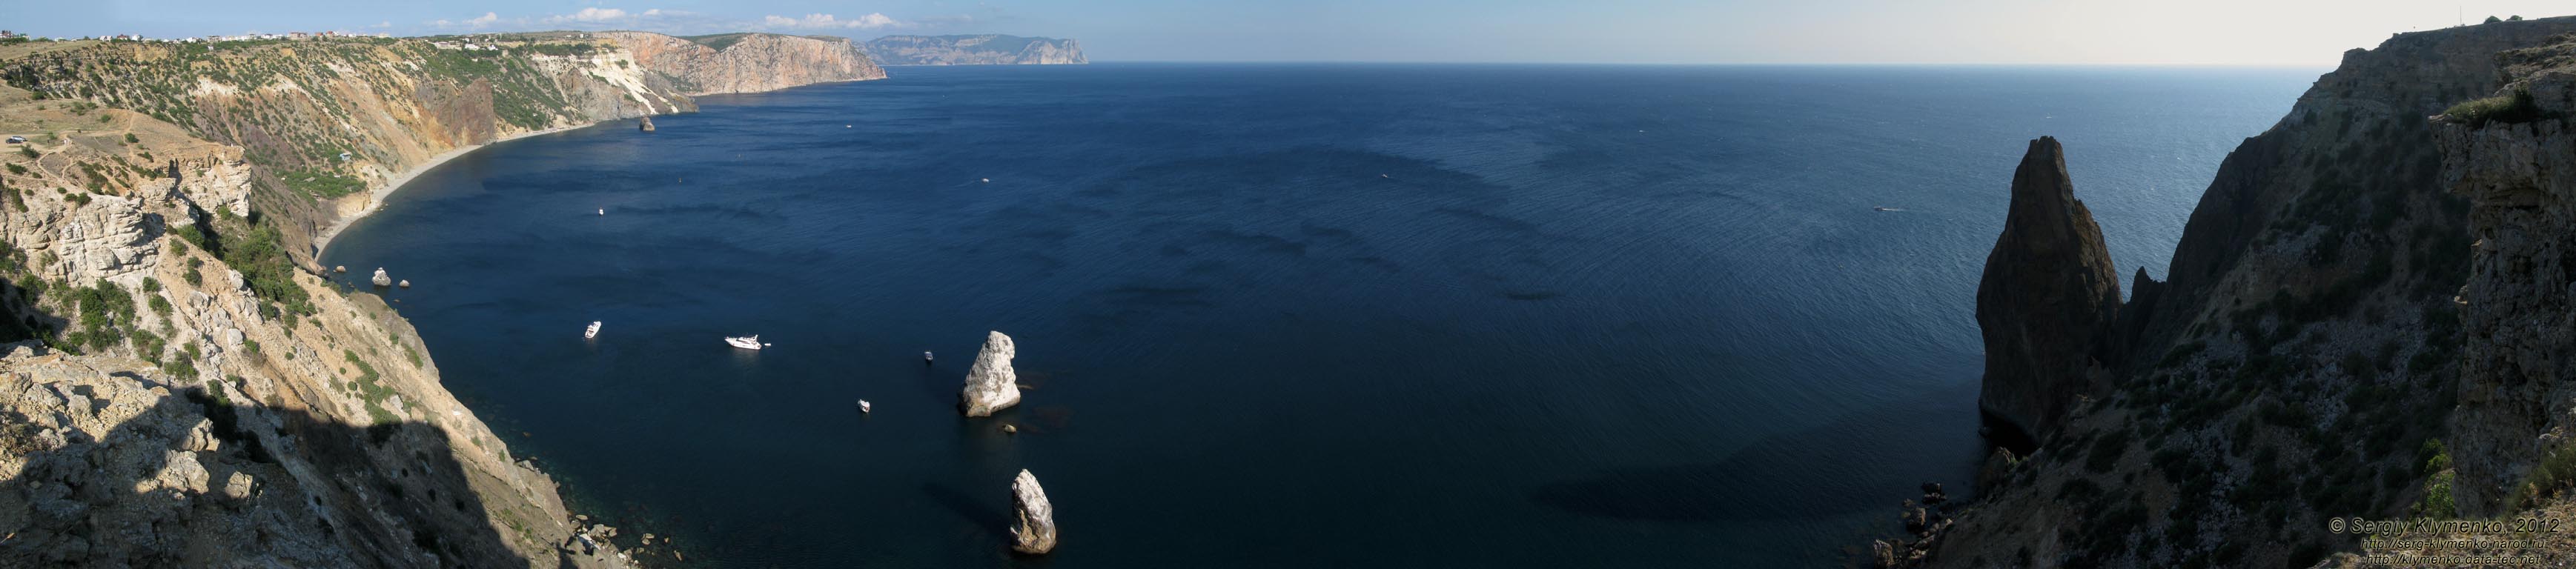 Крым. Фото. Вид на море и побережье с высоты мыса Фиолент. Панорама ~180°.